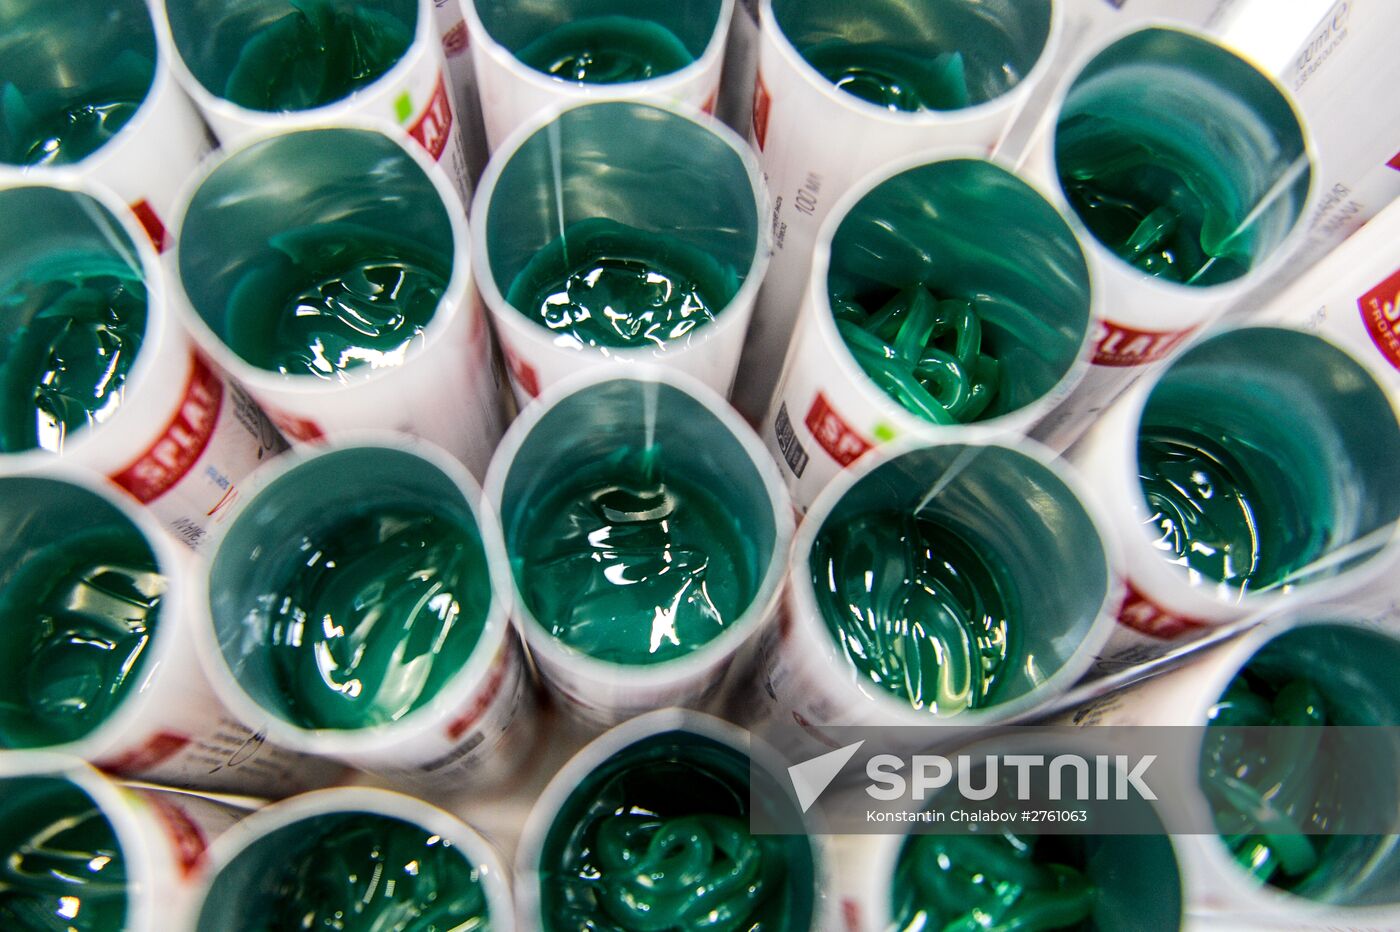 Splat toothpaste produced in Novgorod Region